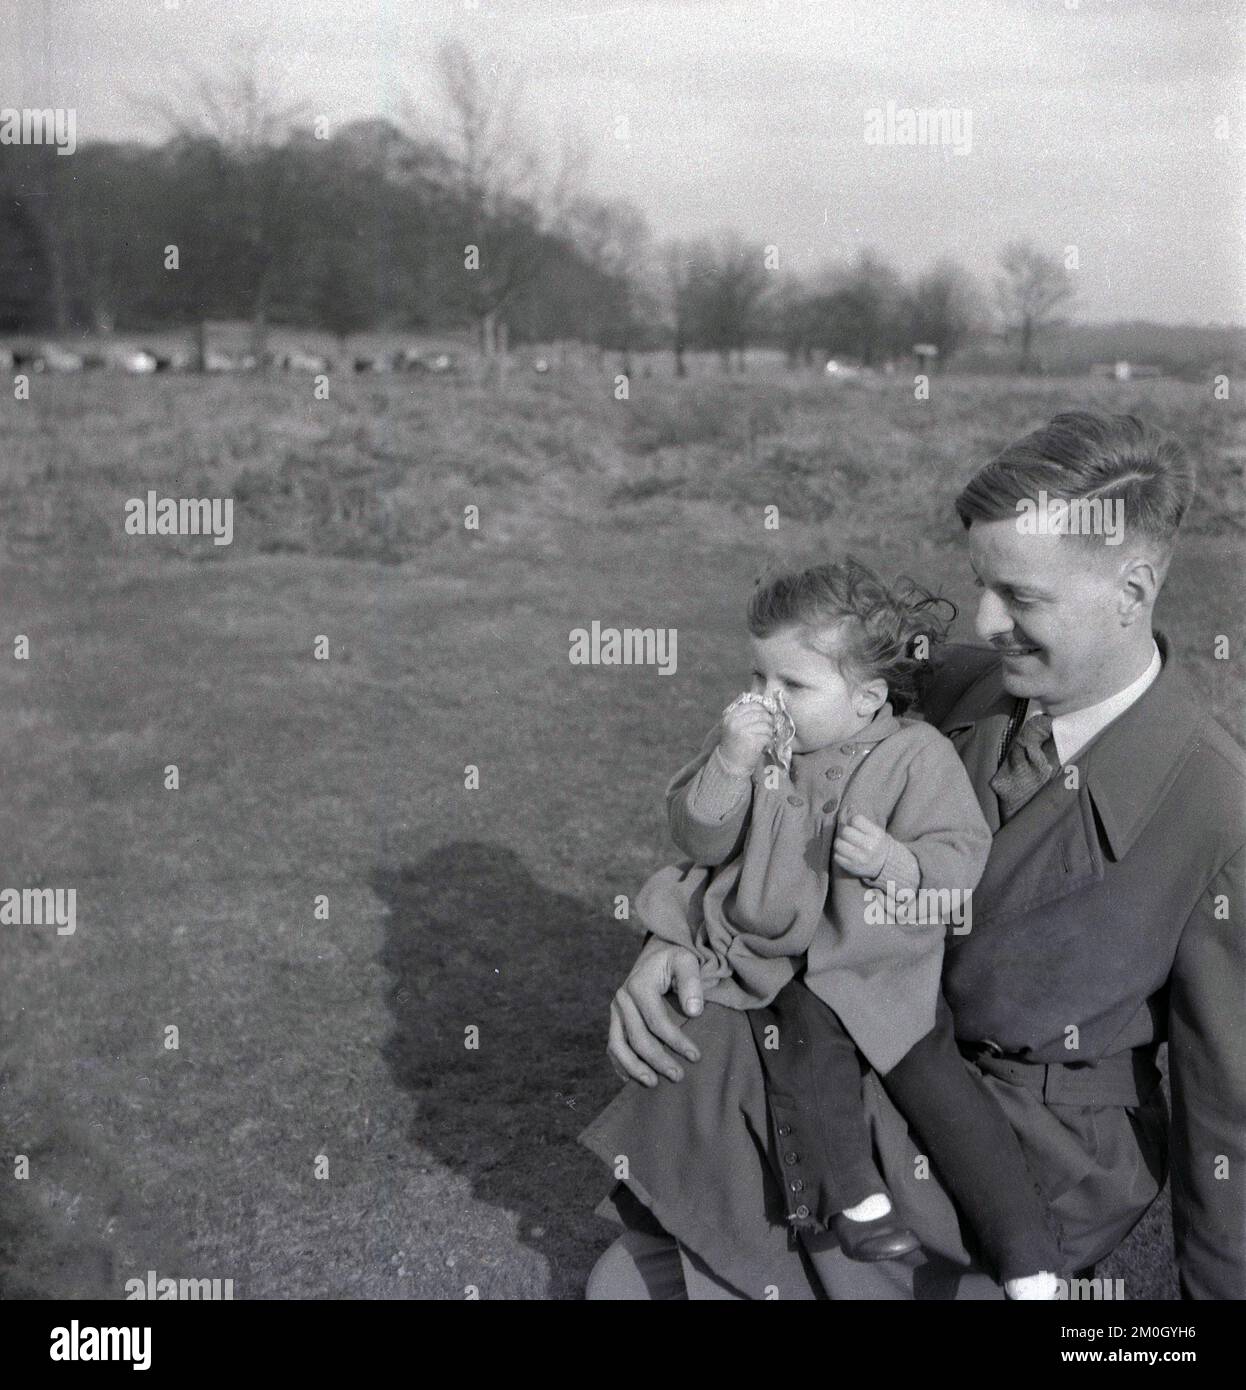 1950s, histórico, fuera en páramos abiertos, un padre que llevaba un impermeable con su hija pequeña descansando sobre su rodilla, Inglaterra, Reino Unido. Foto de stock